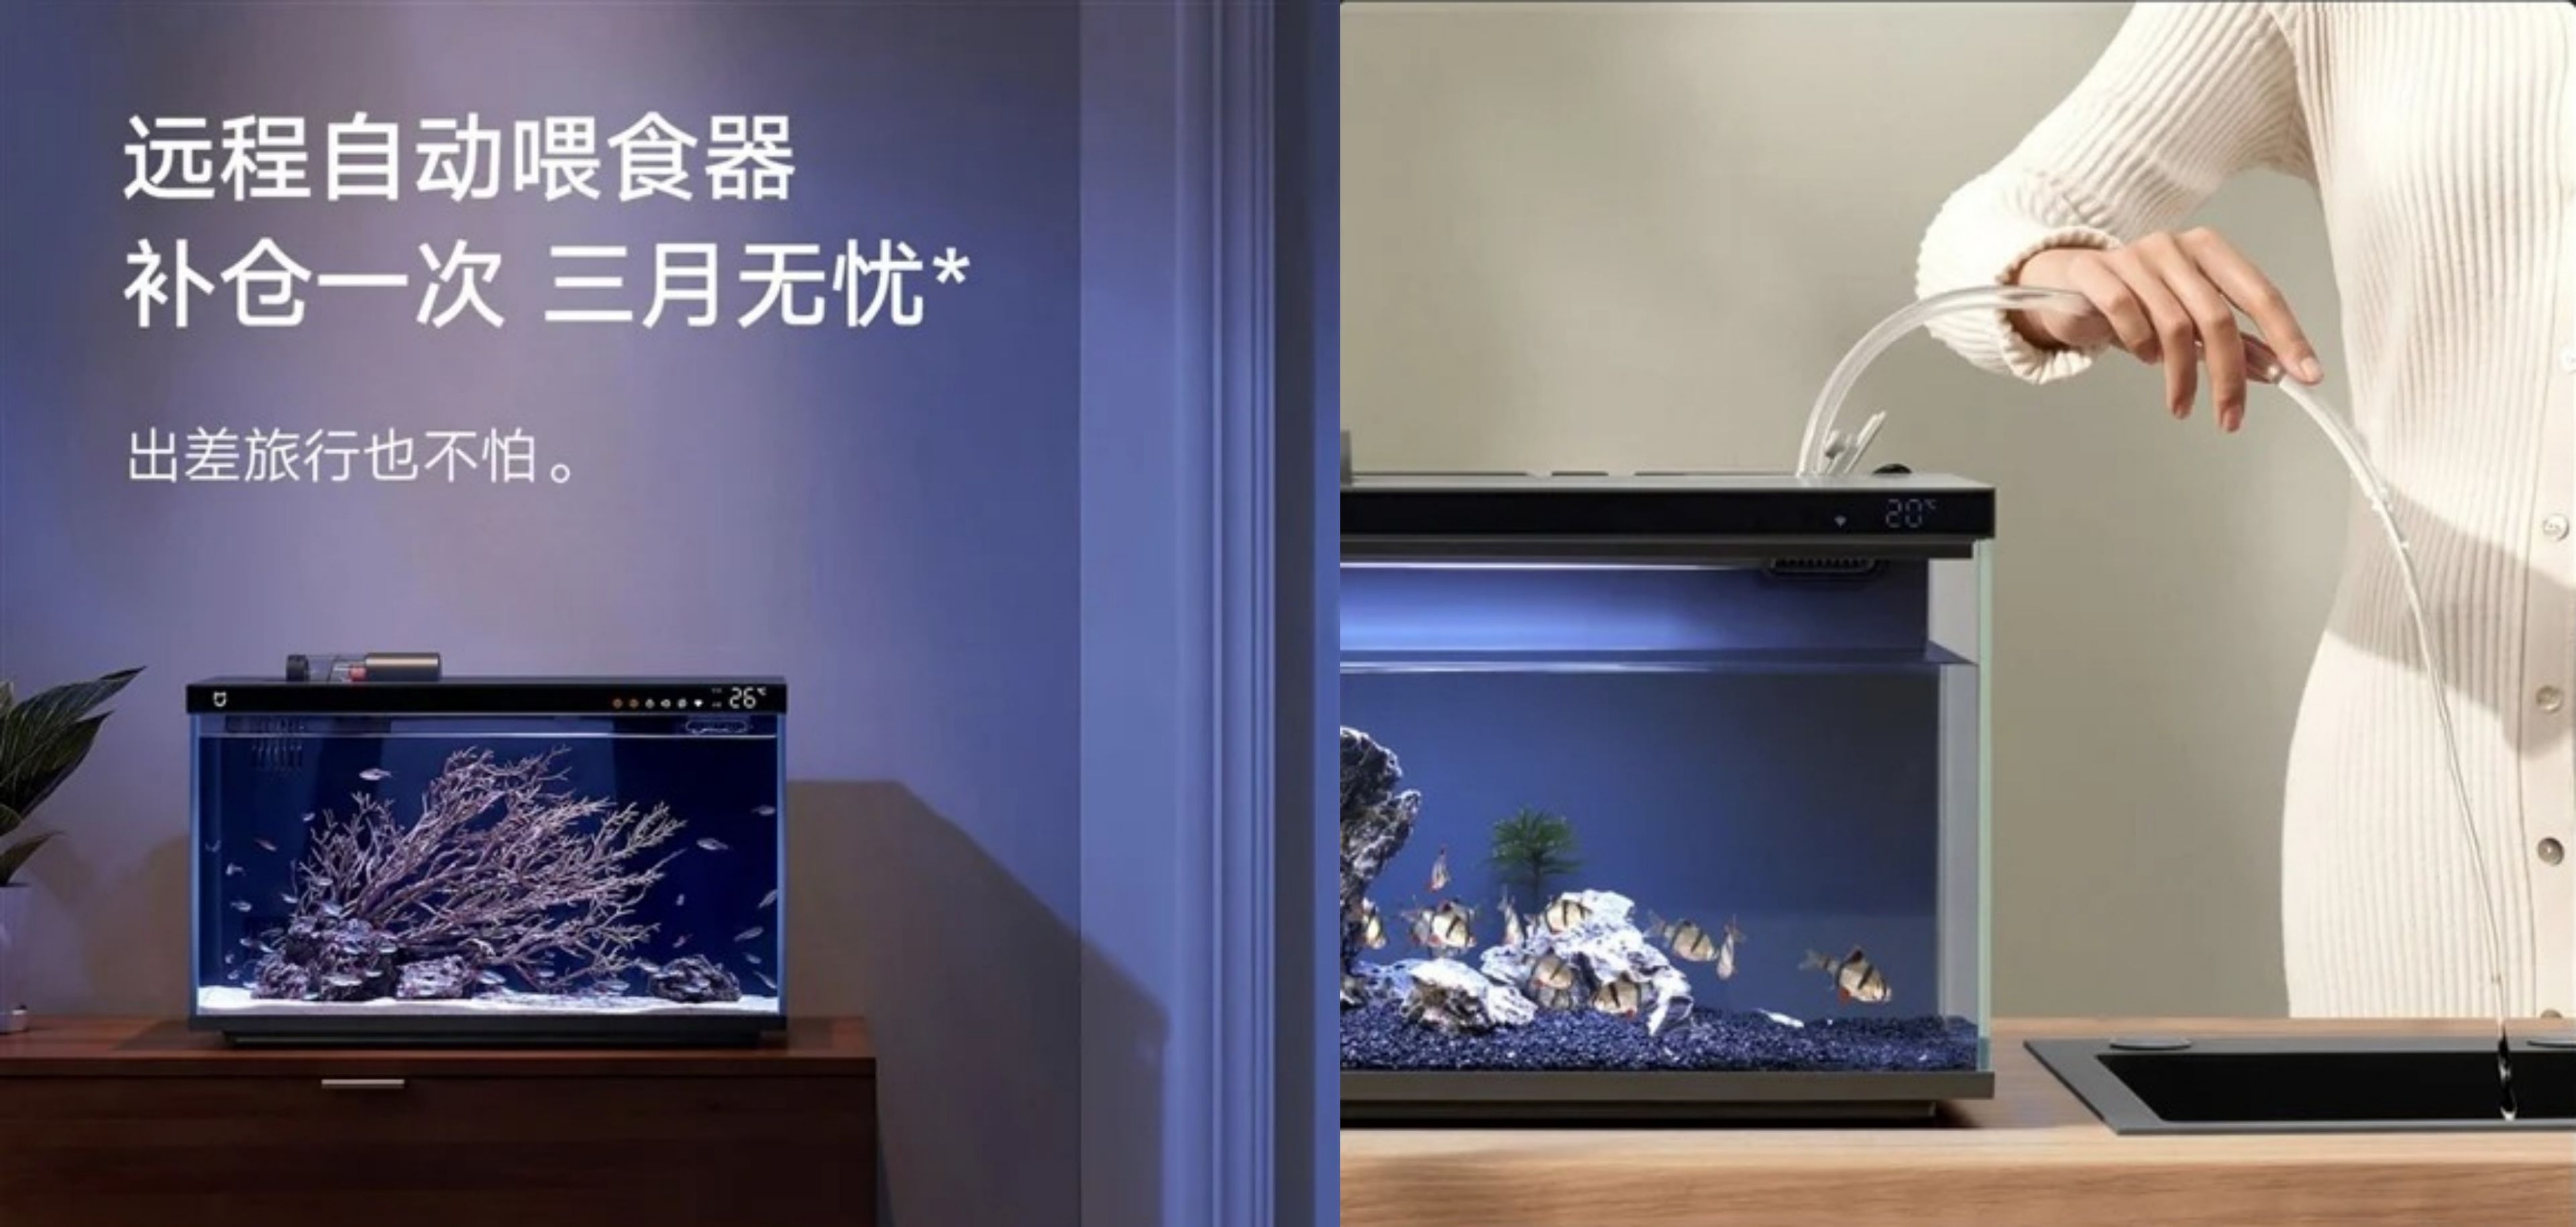 Alimentar a tus peces a distancia es posible: así es la pecera inteligente de Xiaomi